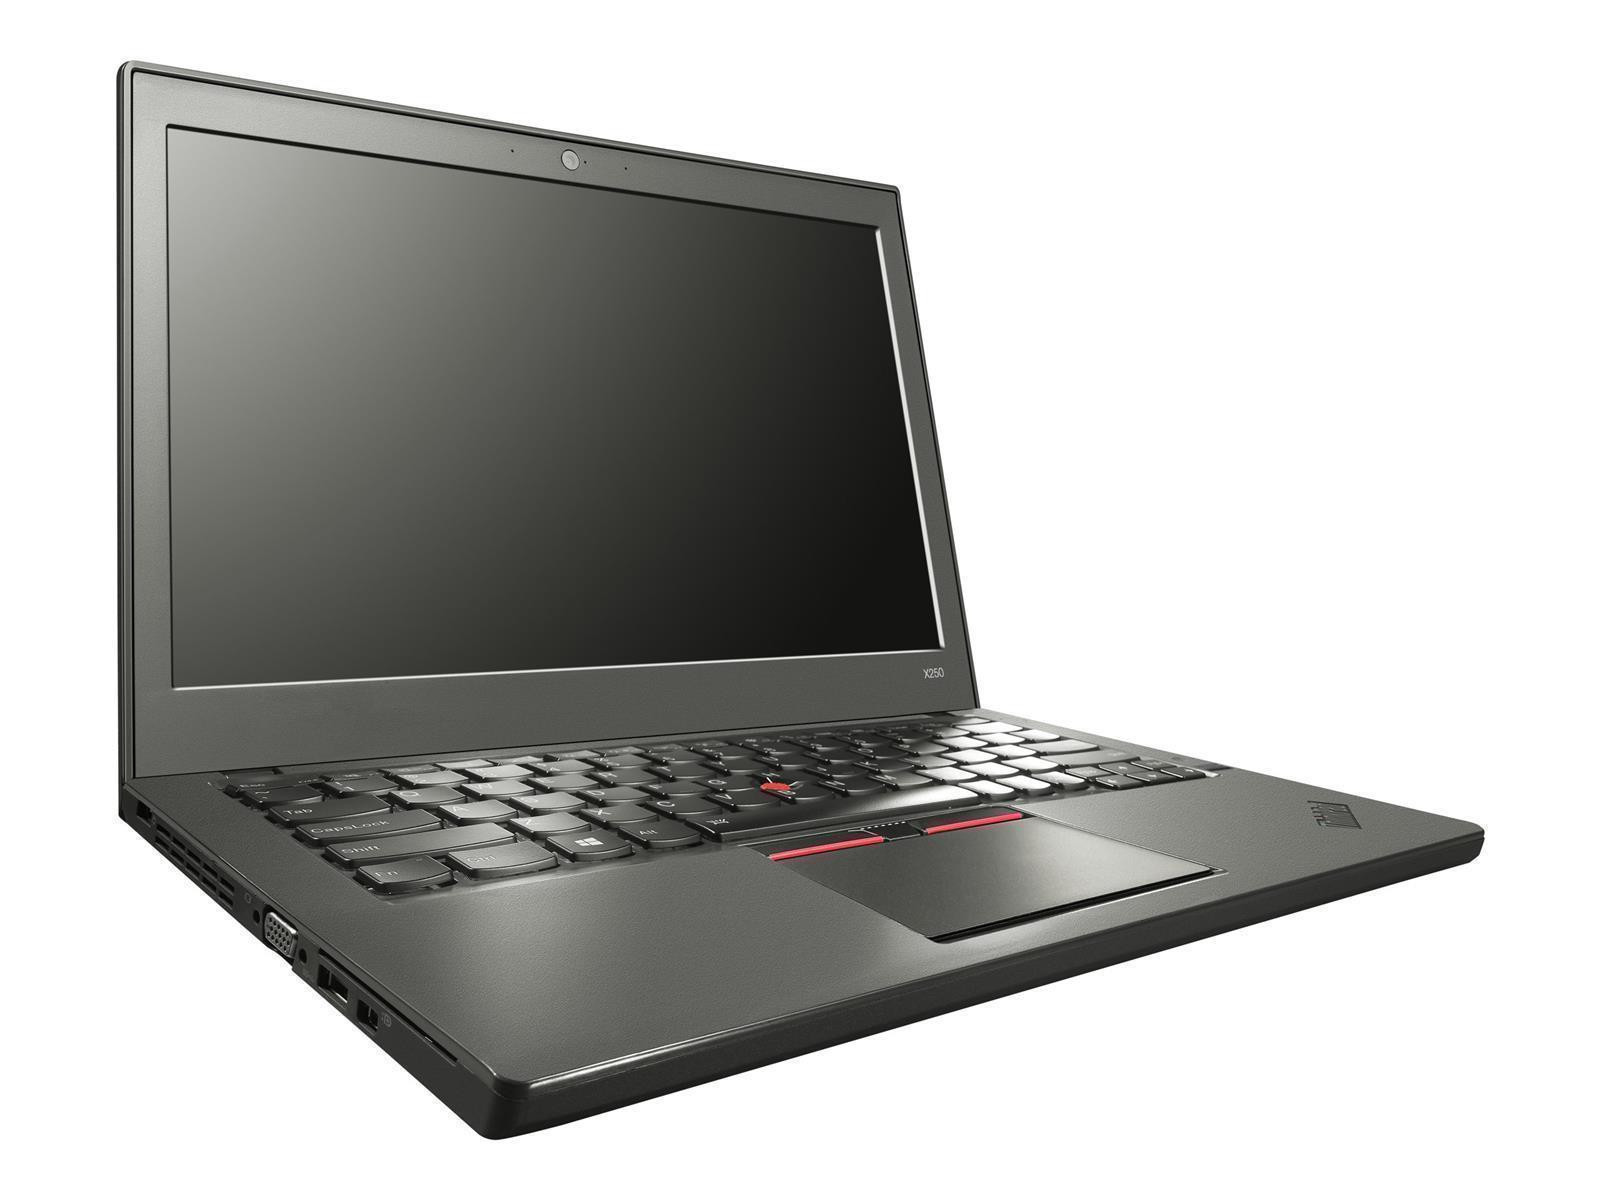 Lenovo ThinkPad X250 | 12,5" | HD | Intel i5-5300U | 4GB RAM | 240GB SSD | Win 10 Pro | FR